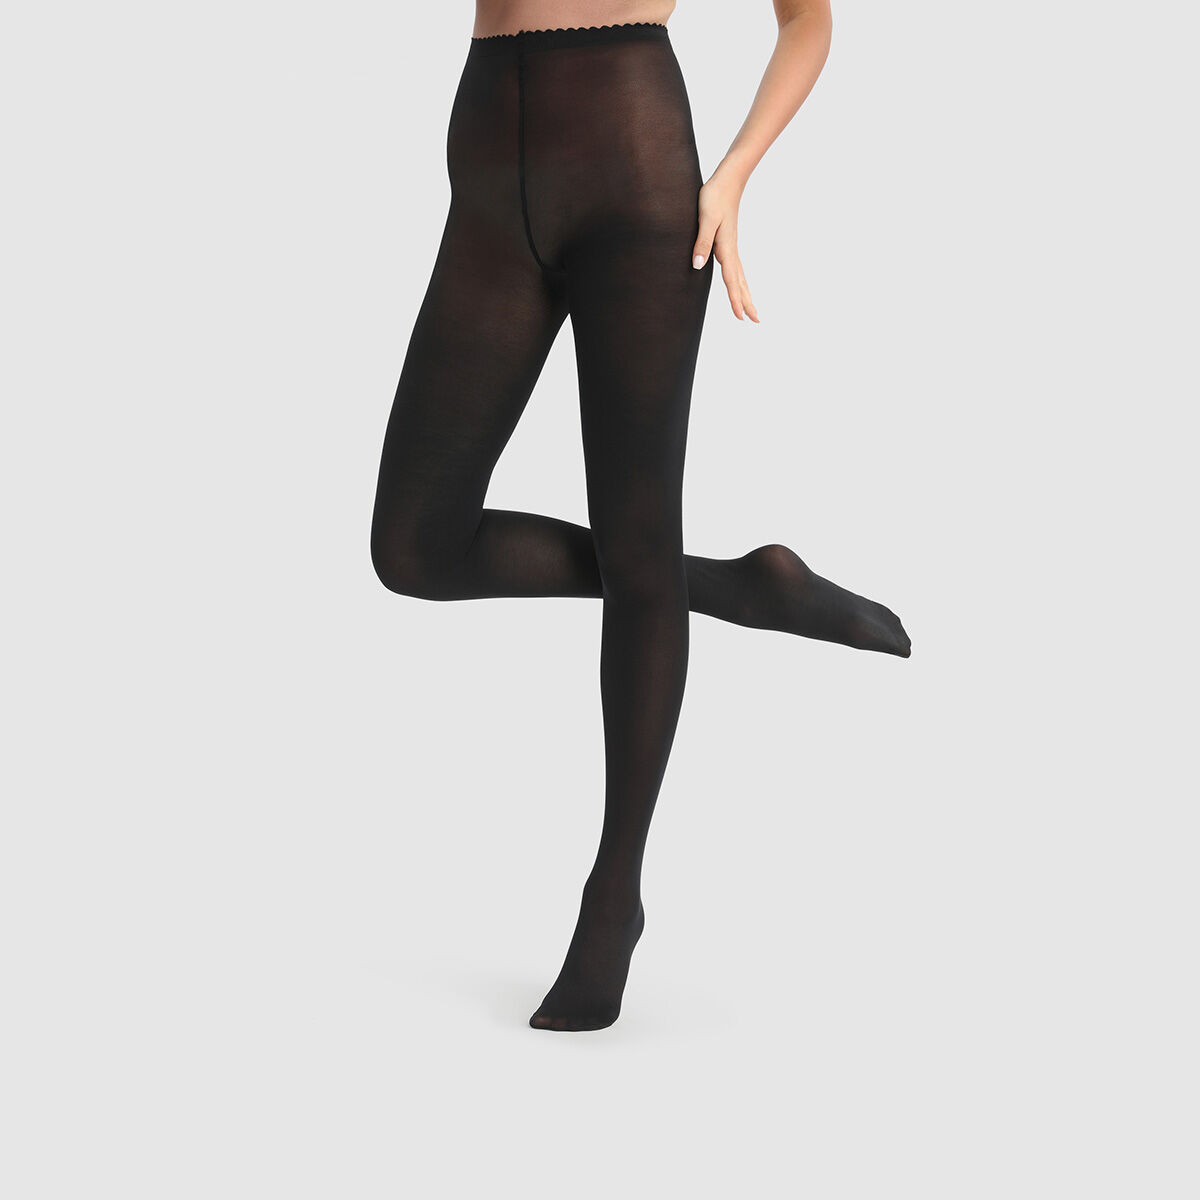 Collant ultra opaque noir 60D Body Touch DIM Femme Vêtements Sous-vêtements Collants 